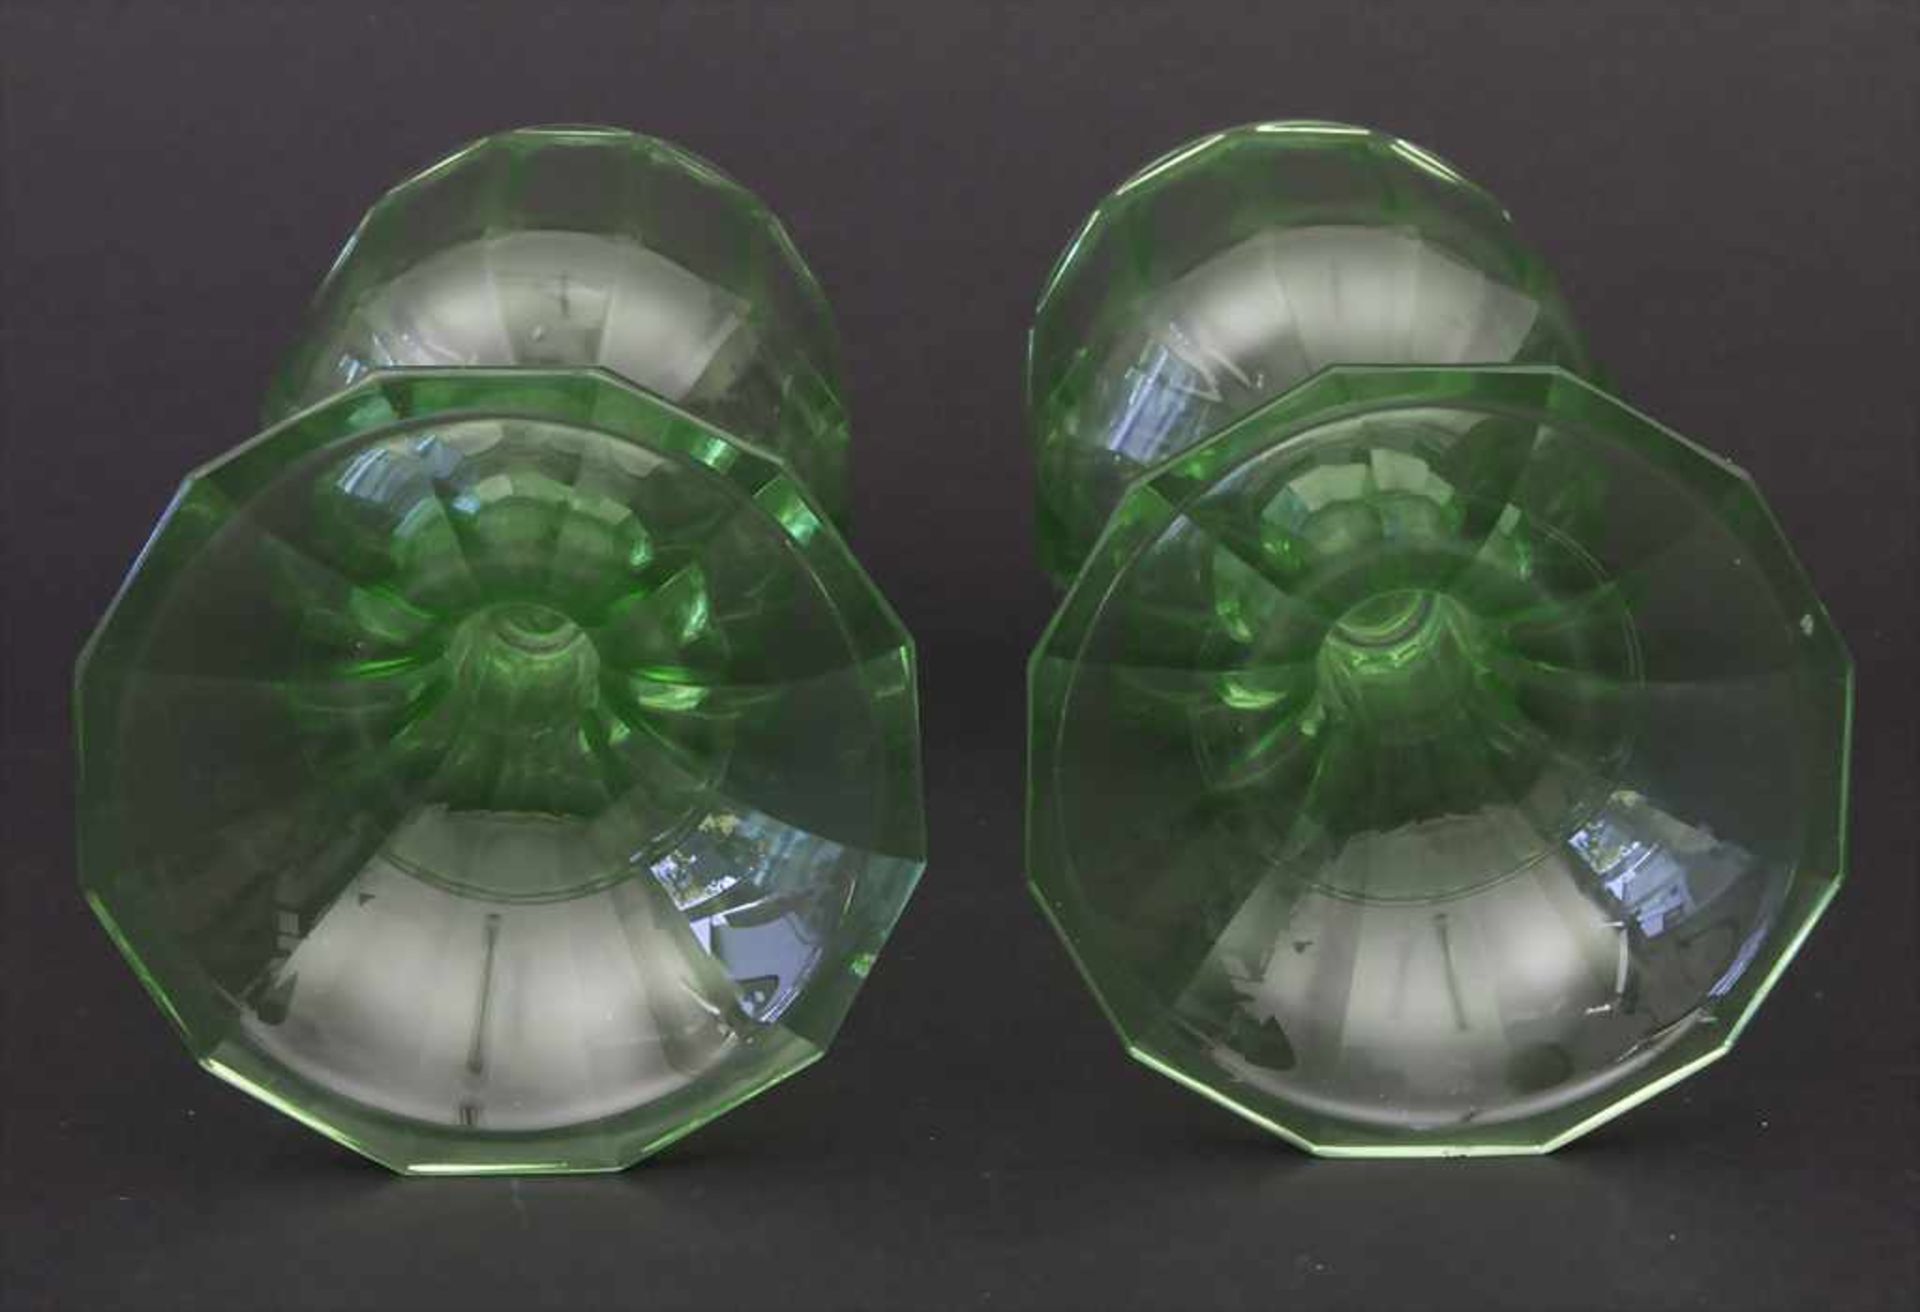 2 Urangläser / 2 uranium glasses, wohl J. & L. Lobmeyr, Wien, um 1880Material: grünes Uranglas mit - Bild 4 aus 4